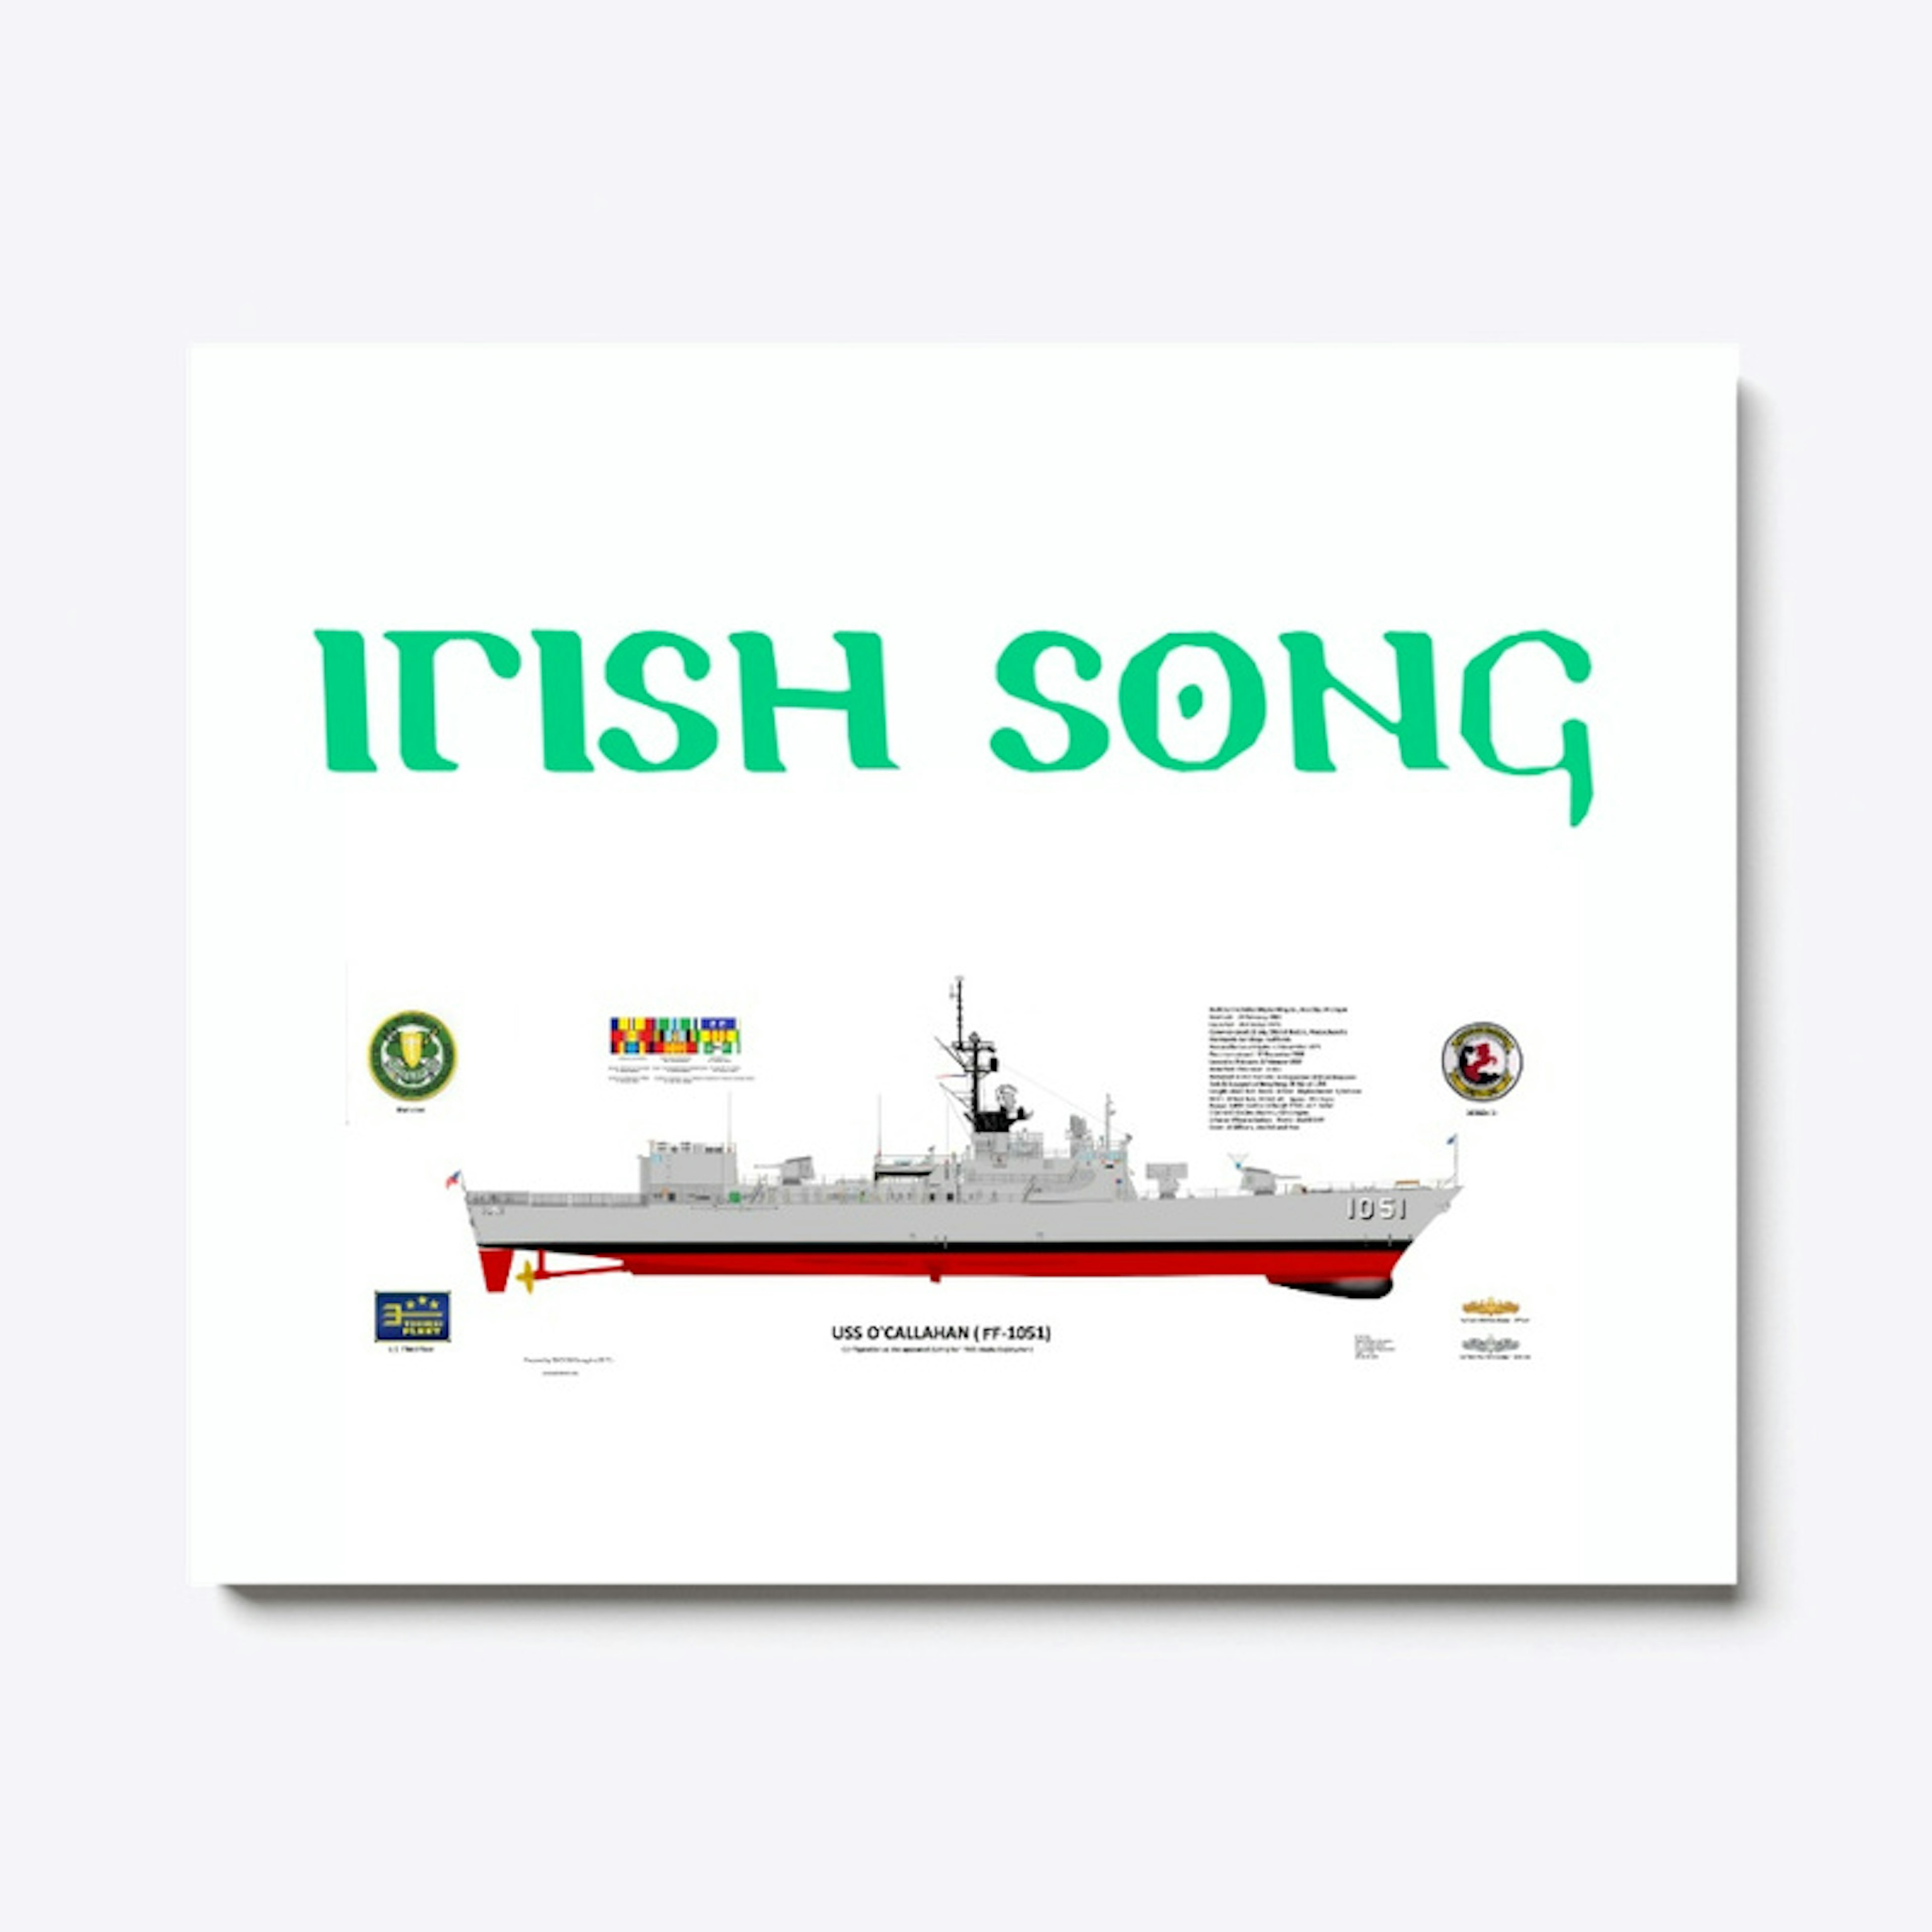 IRISH SONG FF1051